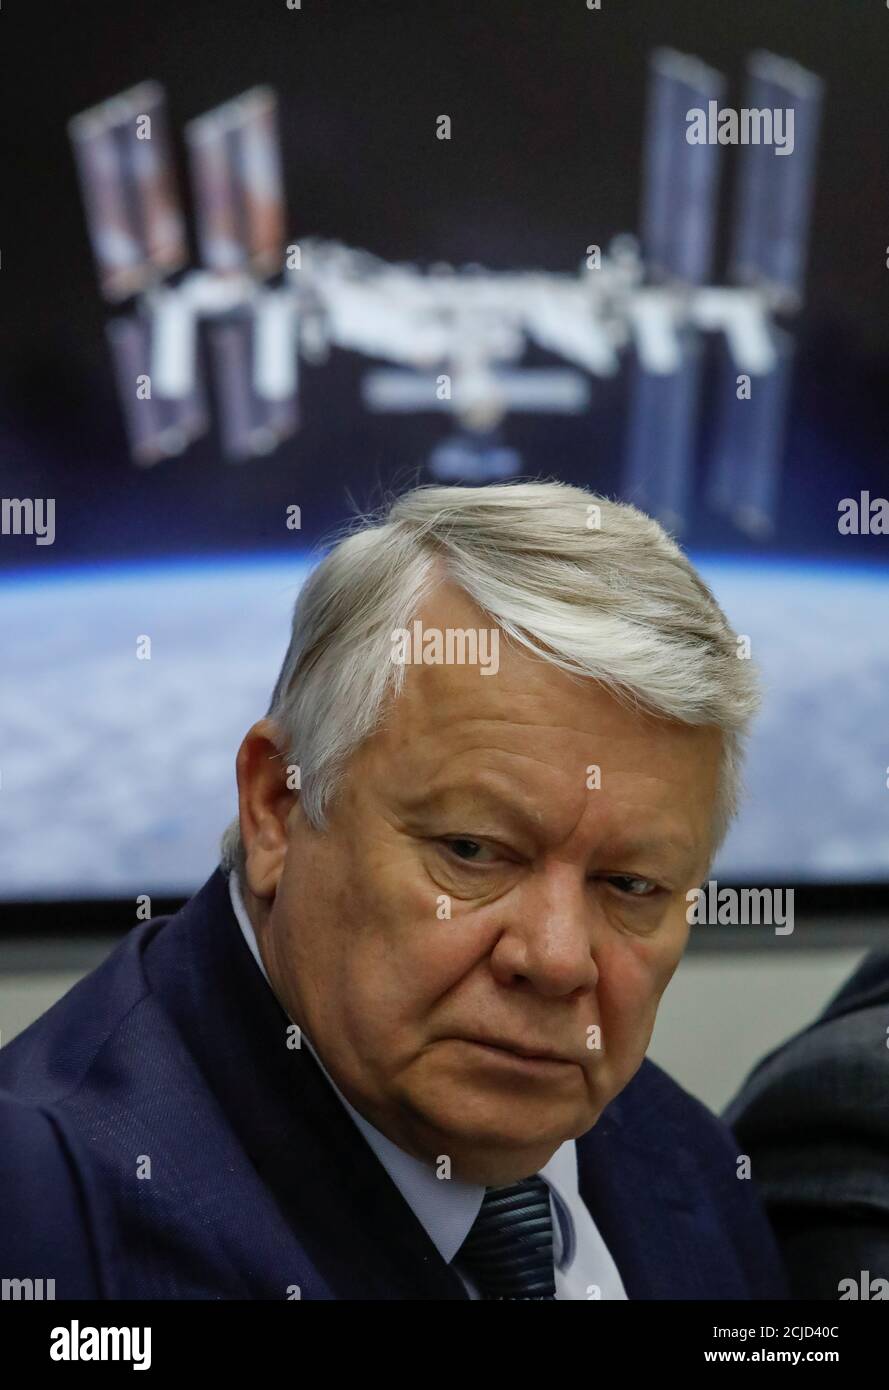 Oleg Skorobogatov, jefe de la comisión investigadora, asiste a una conferencia de prensa sobre los resultados de la investigación sobre el fallido lanzamiento del cohete Soyuz el 11 de octubre, en el Centro Ruso de Control de Misiones de Korolev, a las afueras de Moscú, Rusia, el 1 de noviembre de 2018. REUTERS/Sergei Karpukhin Foto de stock